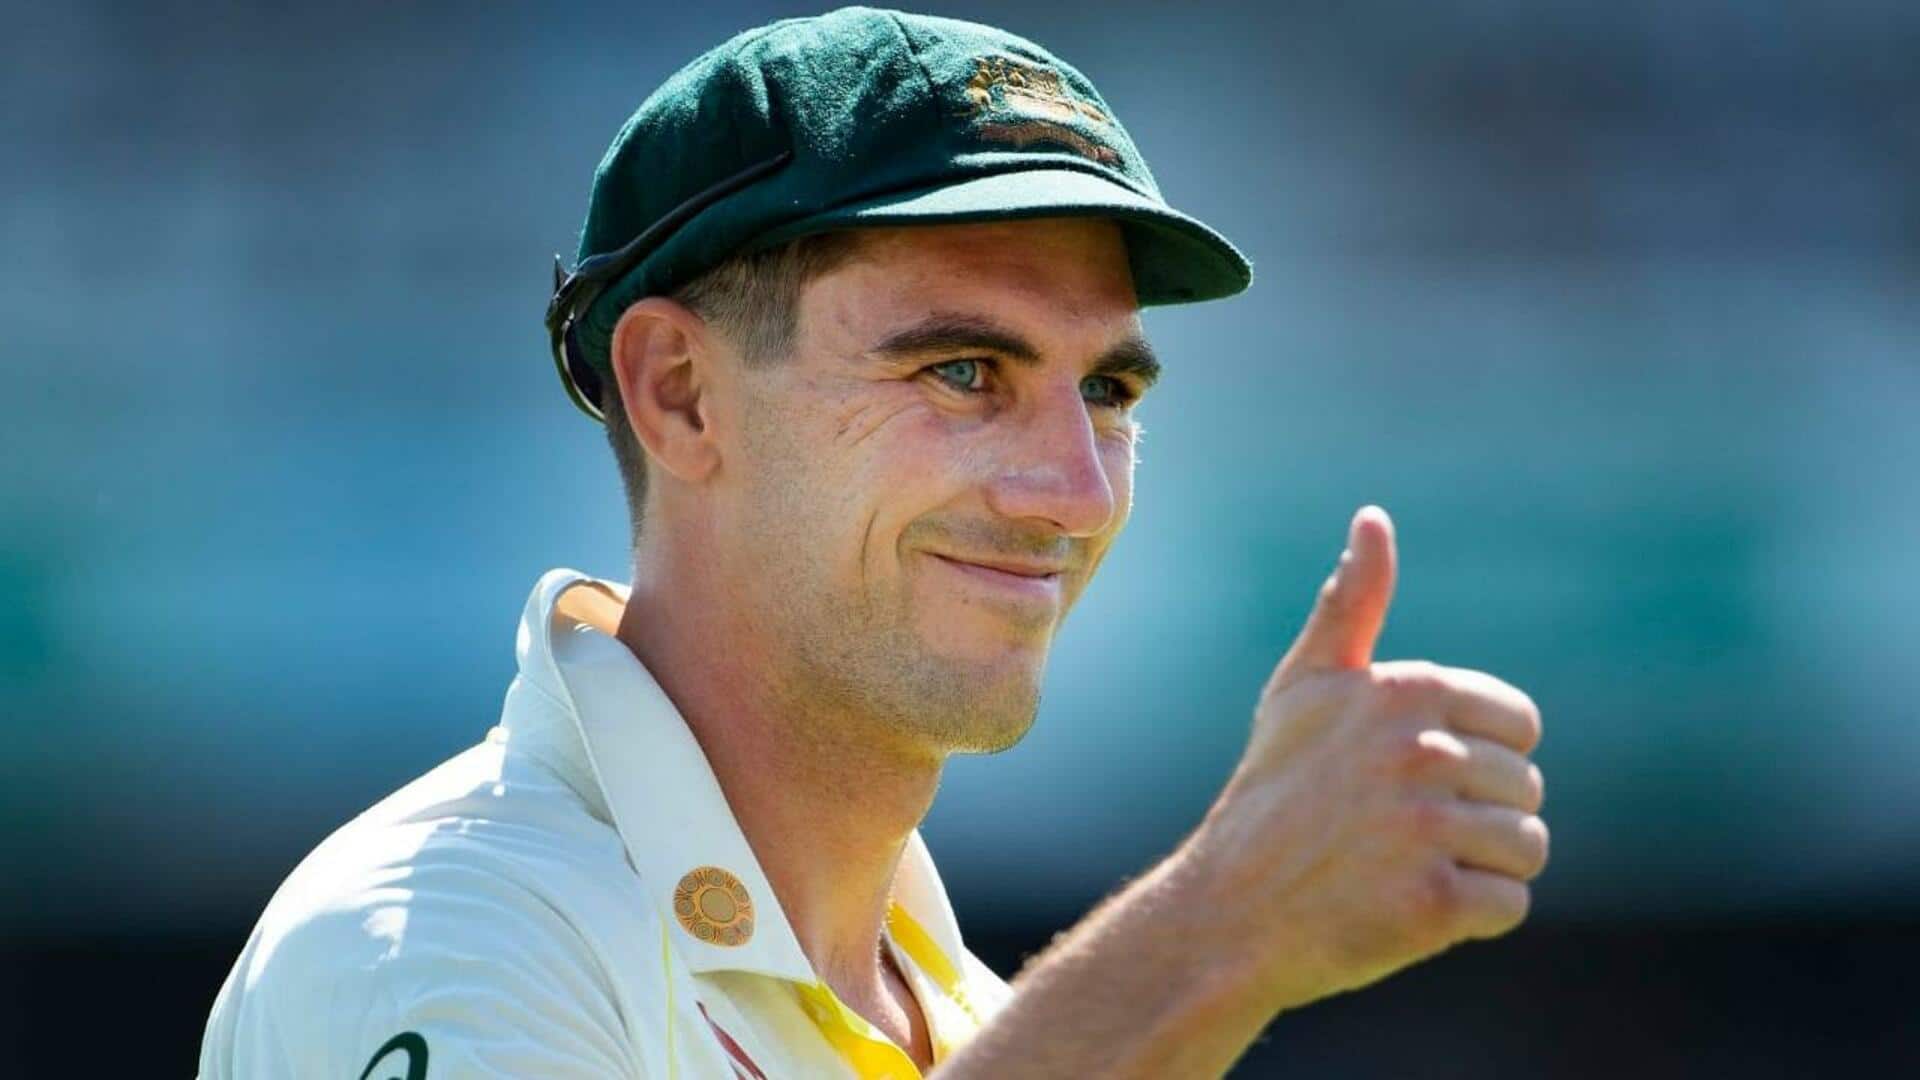 बॉर्डर-गावस्कर ट्रॉफी: ऑस्ट्रेलिया के कप्तान पैट कमिंस स्वदेश लौटे, जानिए क्या है कारण